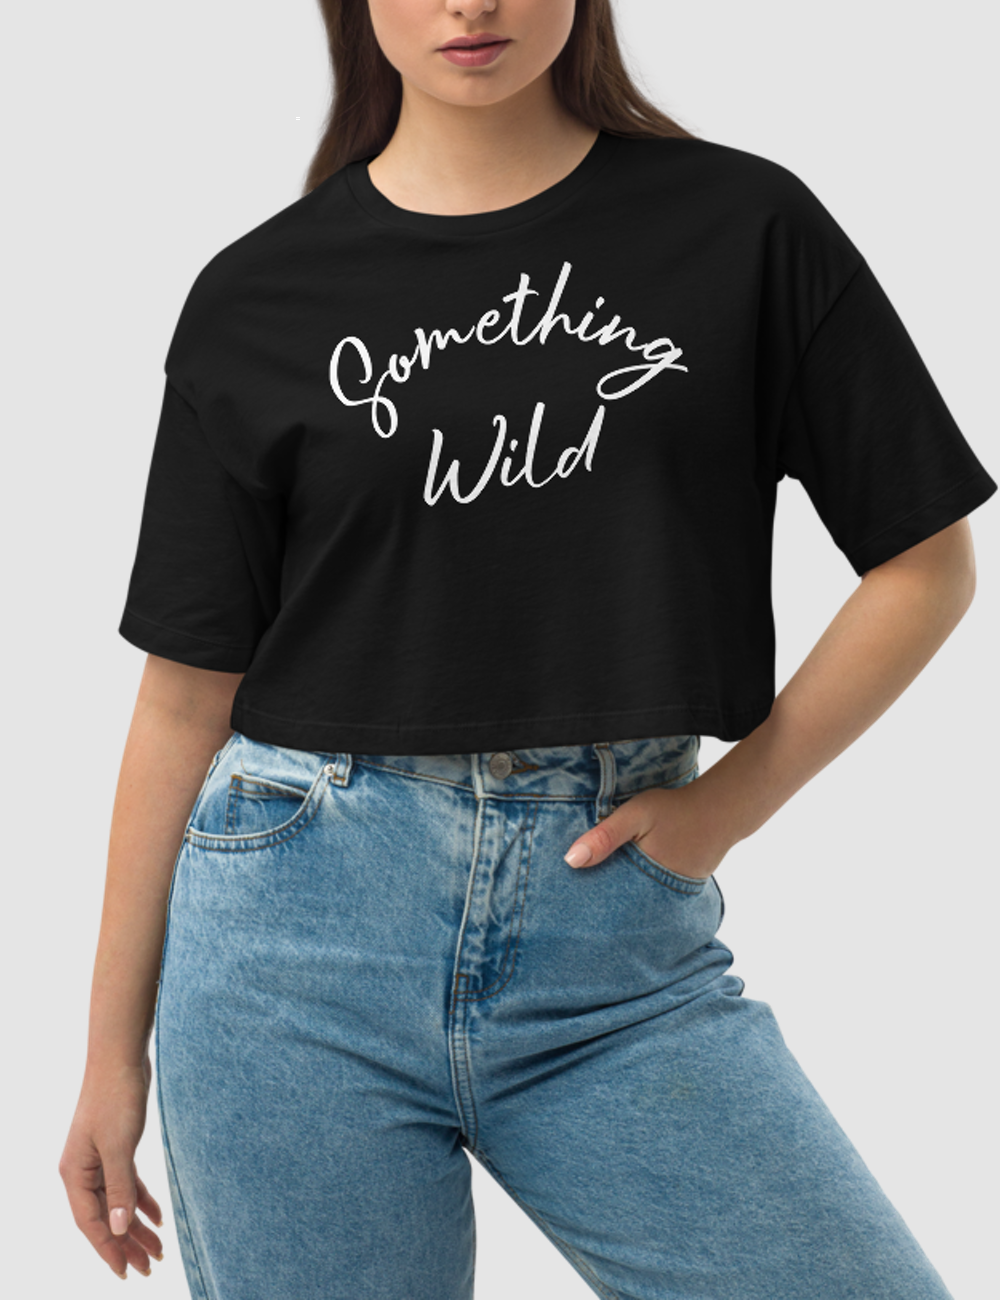 Something Wild | Women's Loose Fit Crop Top T-Shirt OniTakai